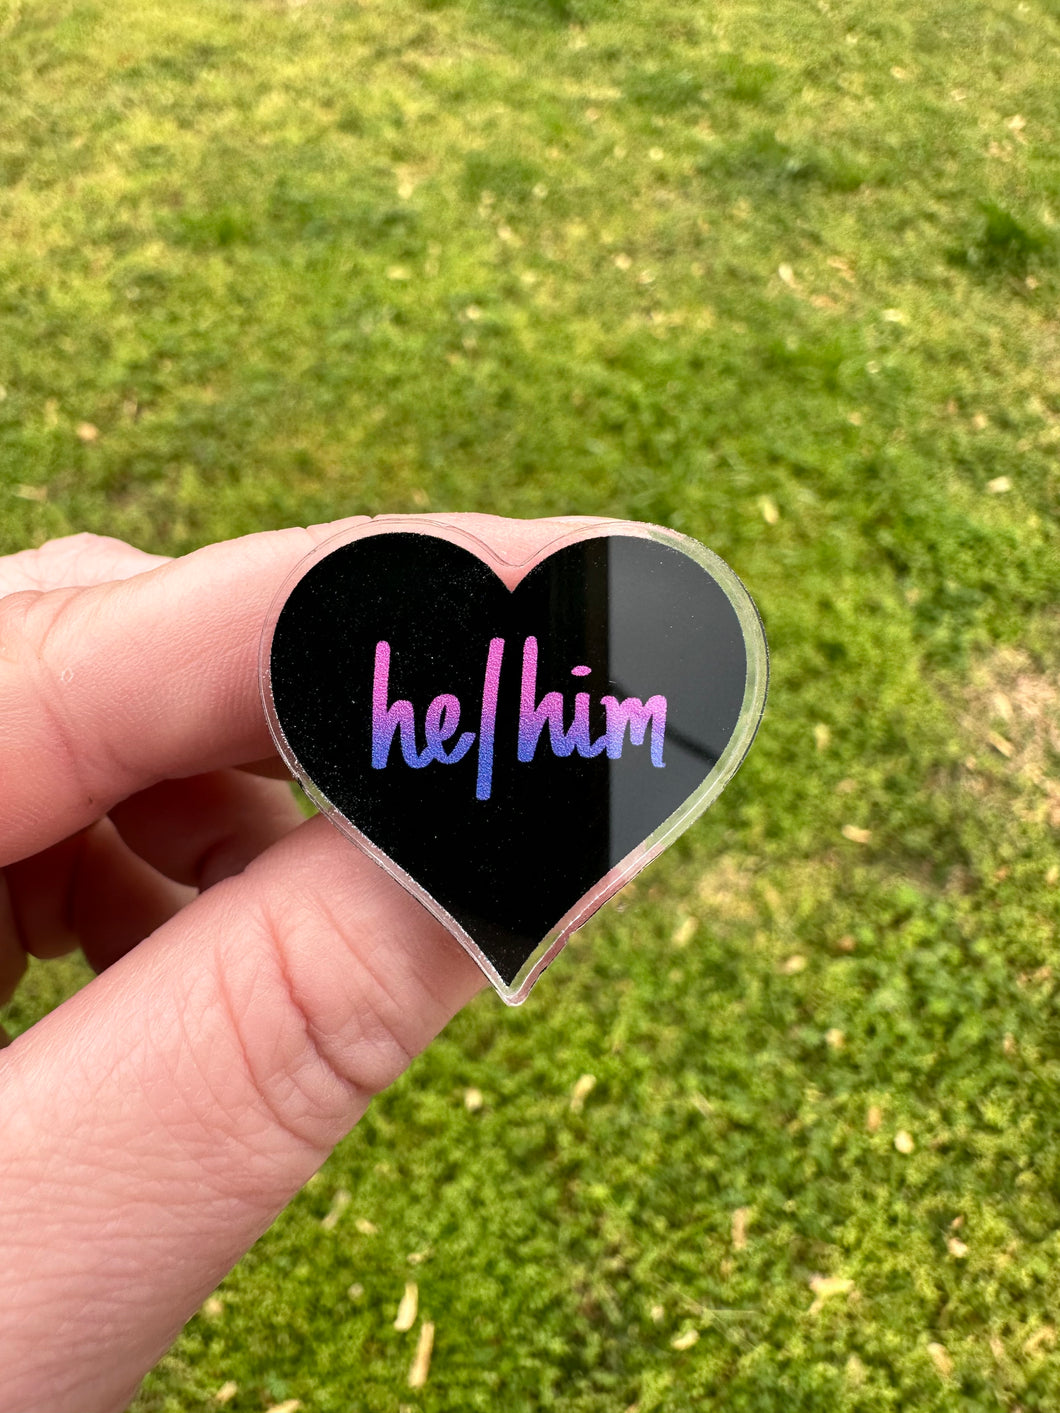 He / Him Pronoun Heart Pin